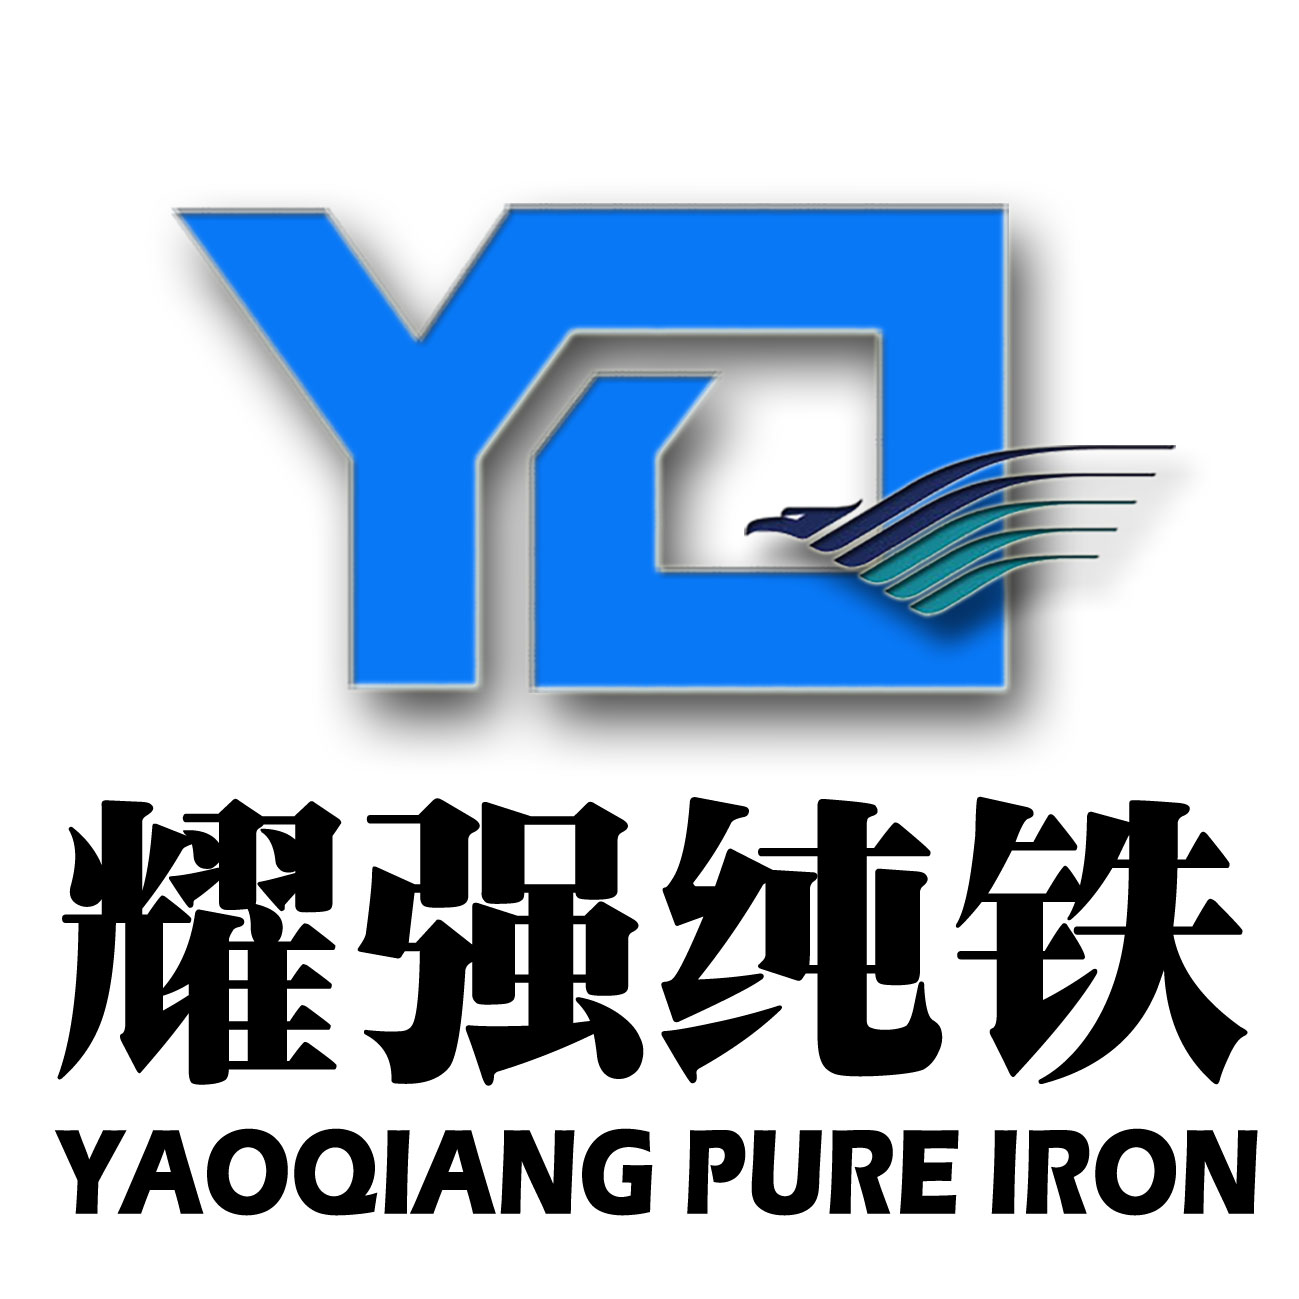 供应高纯铁YT01 YT2 YT3工业纯铁原料纯铁